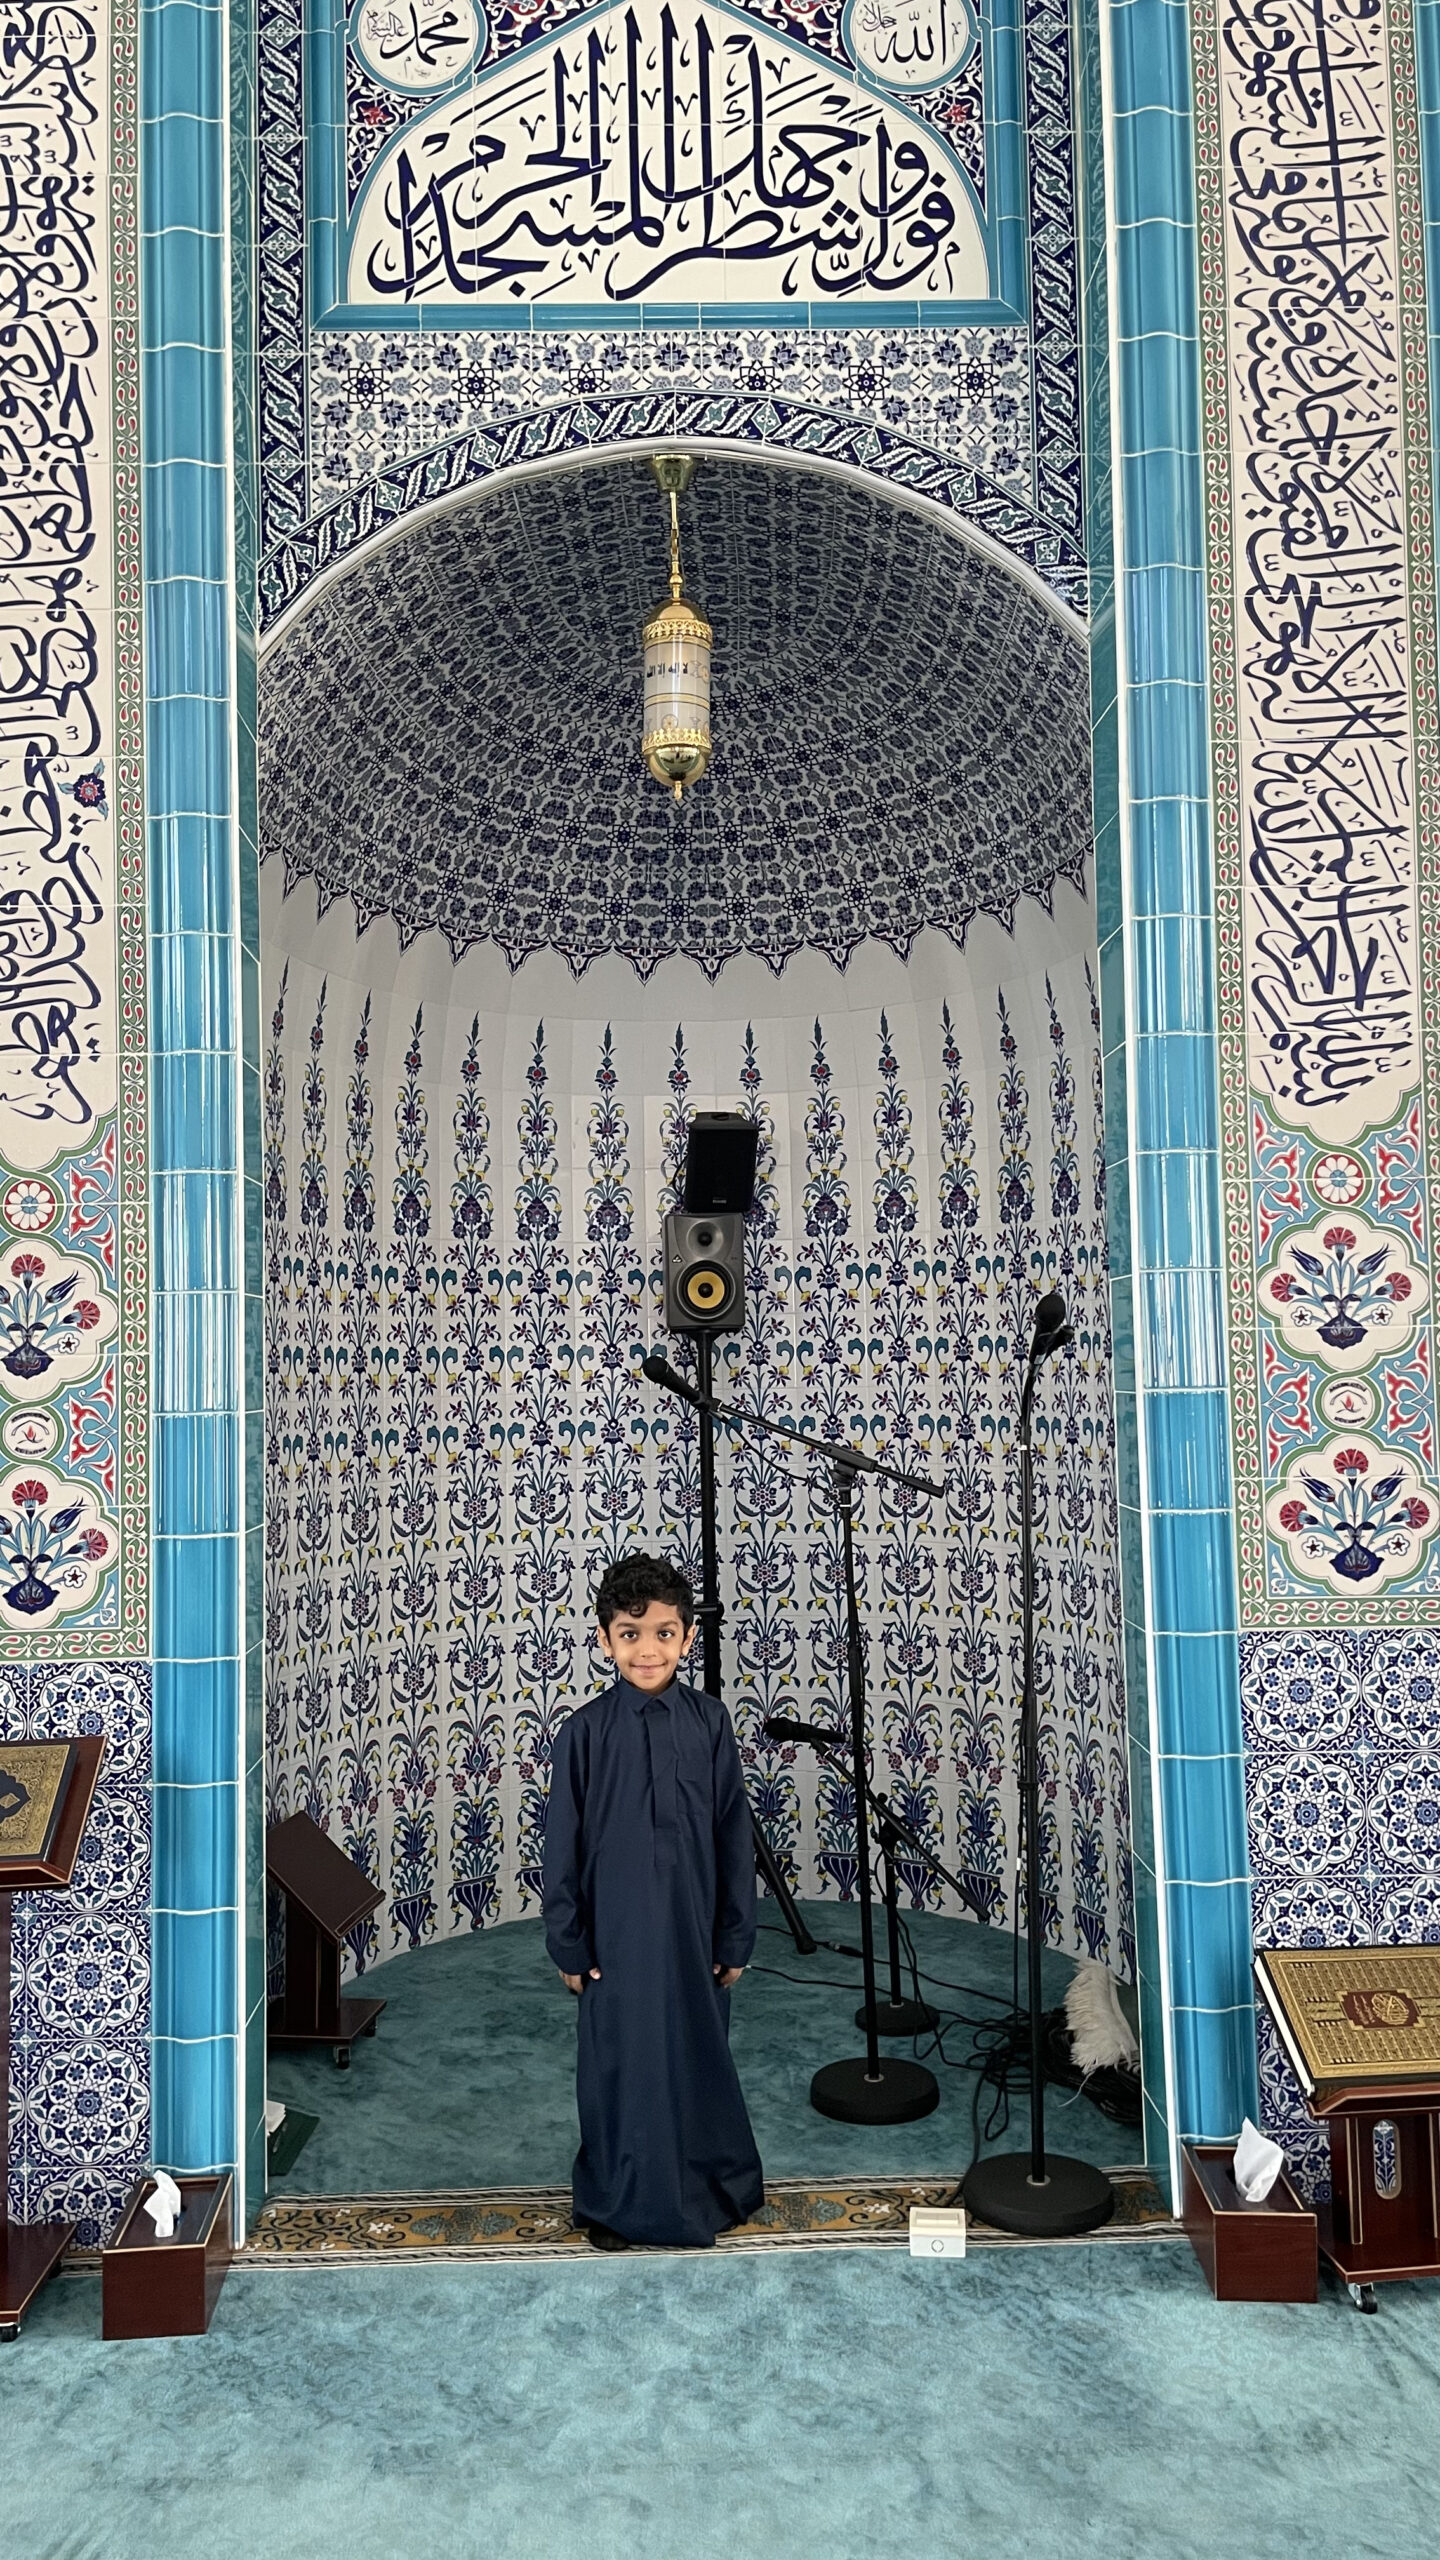 فعالية زيارة المسجد